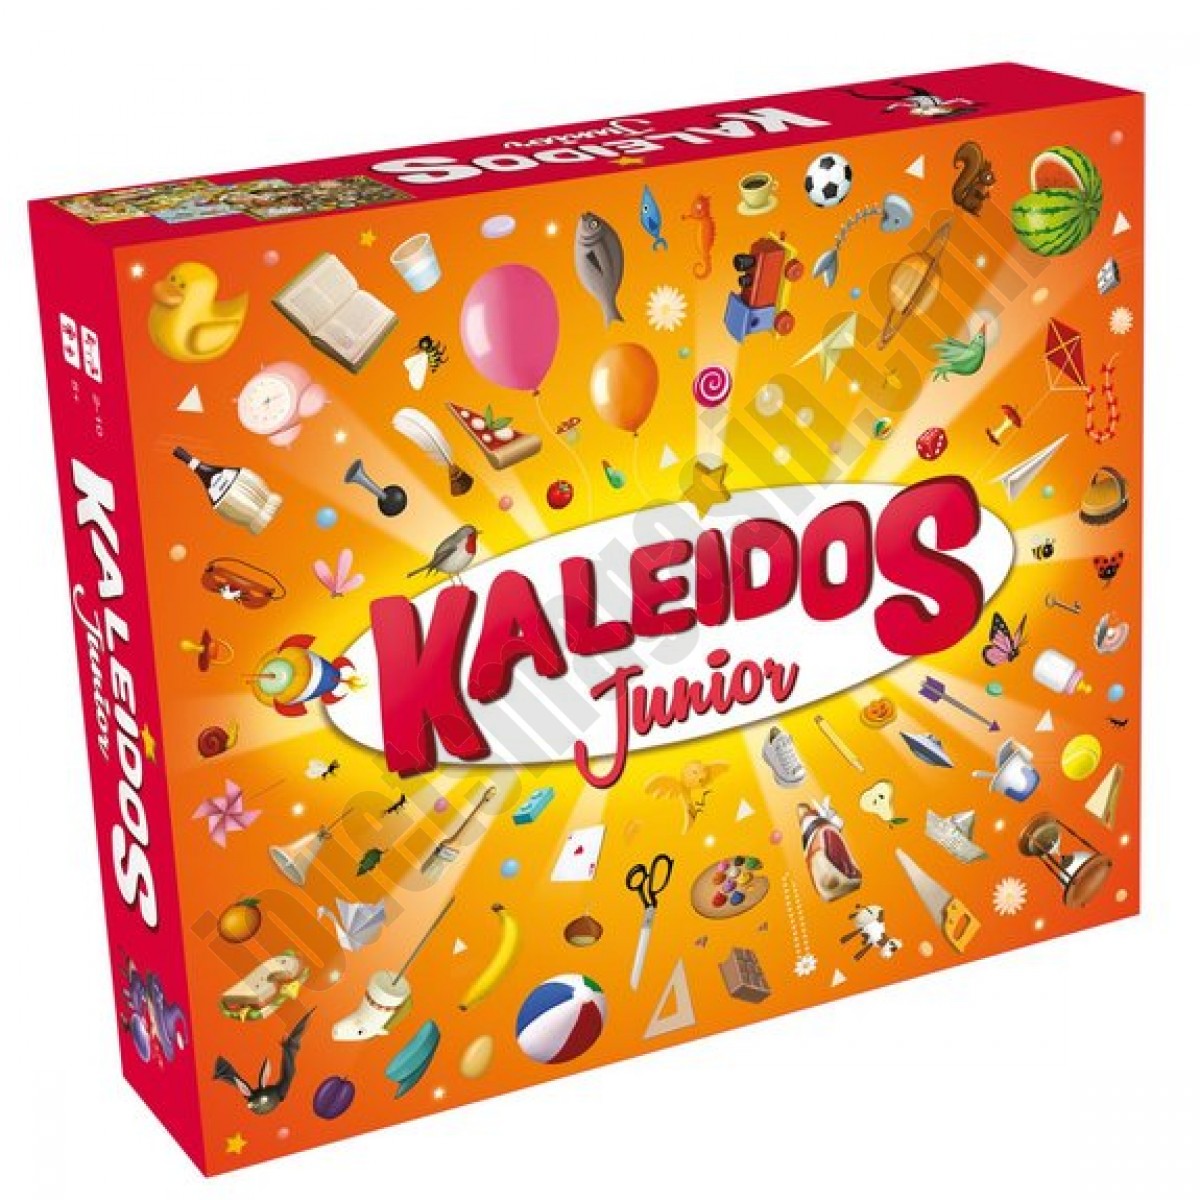 Kaleidos Junior ◆◆◆ Nouveau - Kaleidos Junior ◆◆◆ Nouveau